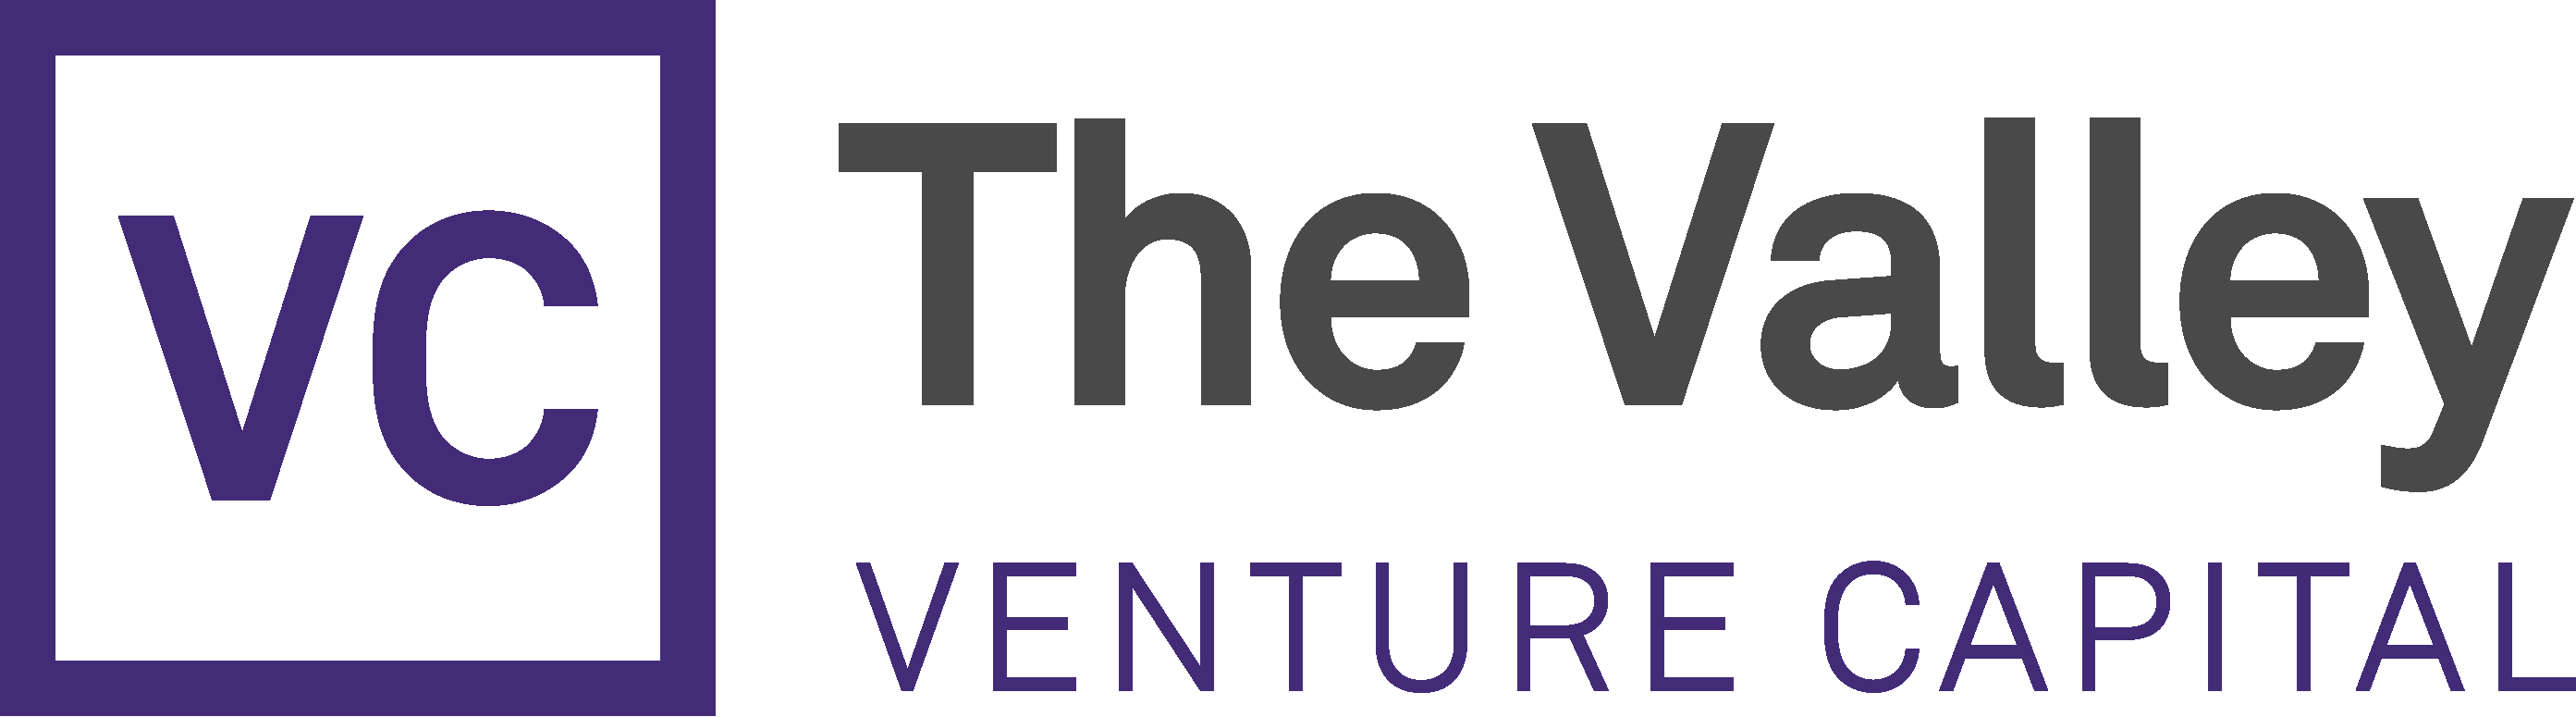 Nace la gestora The Valley Venture Capital, con un primer fondo de 15M para invertir en capital semilla